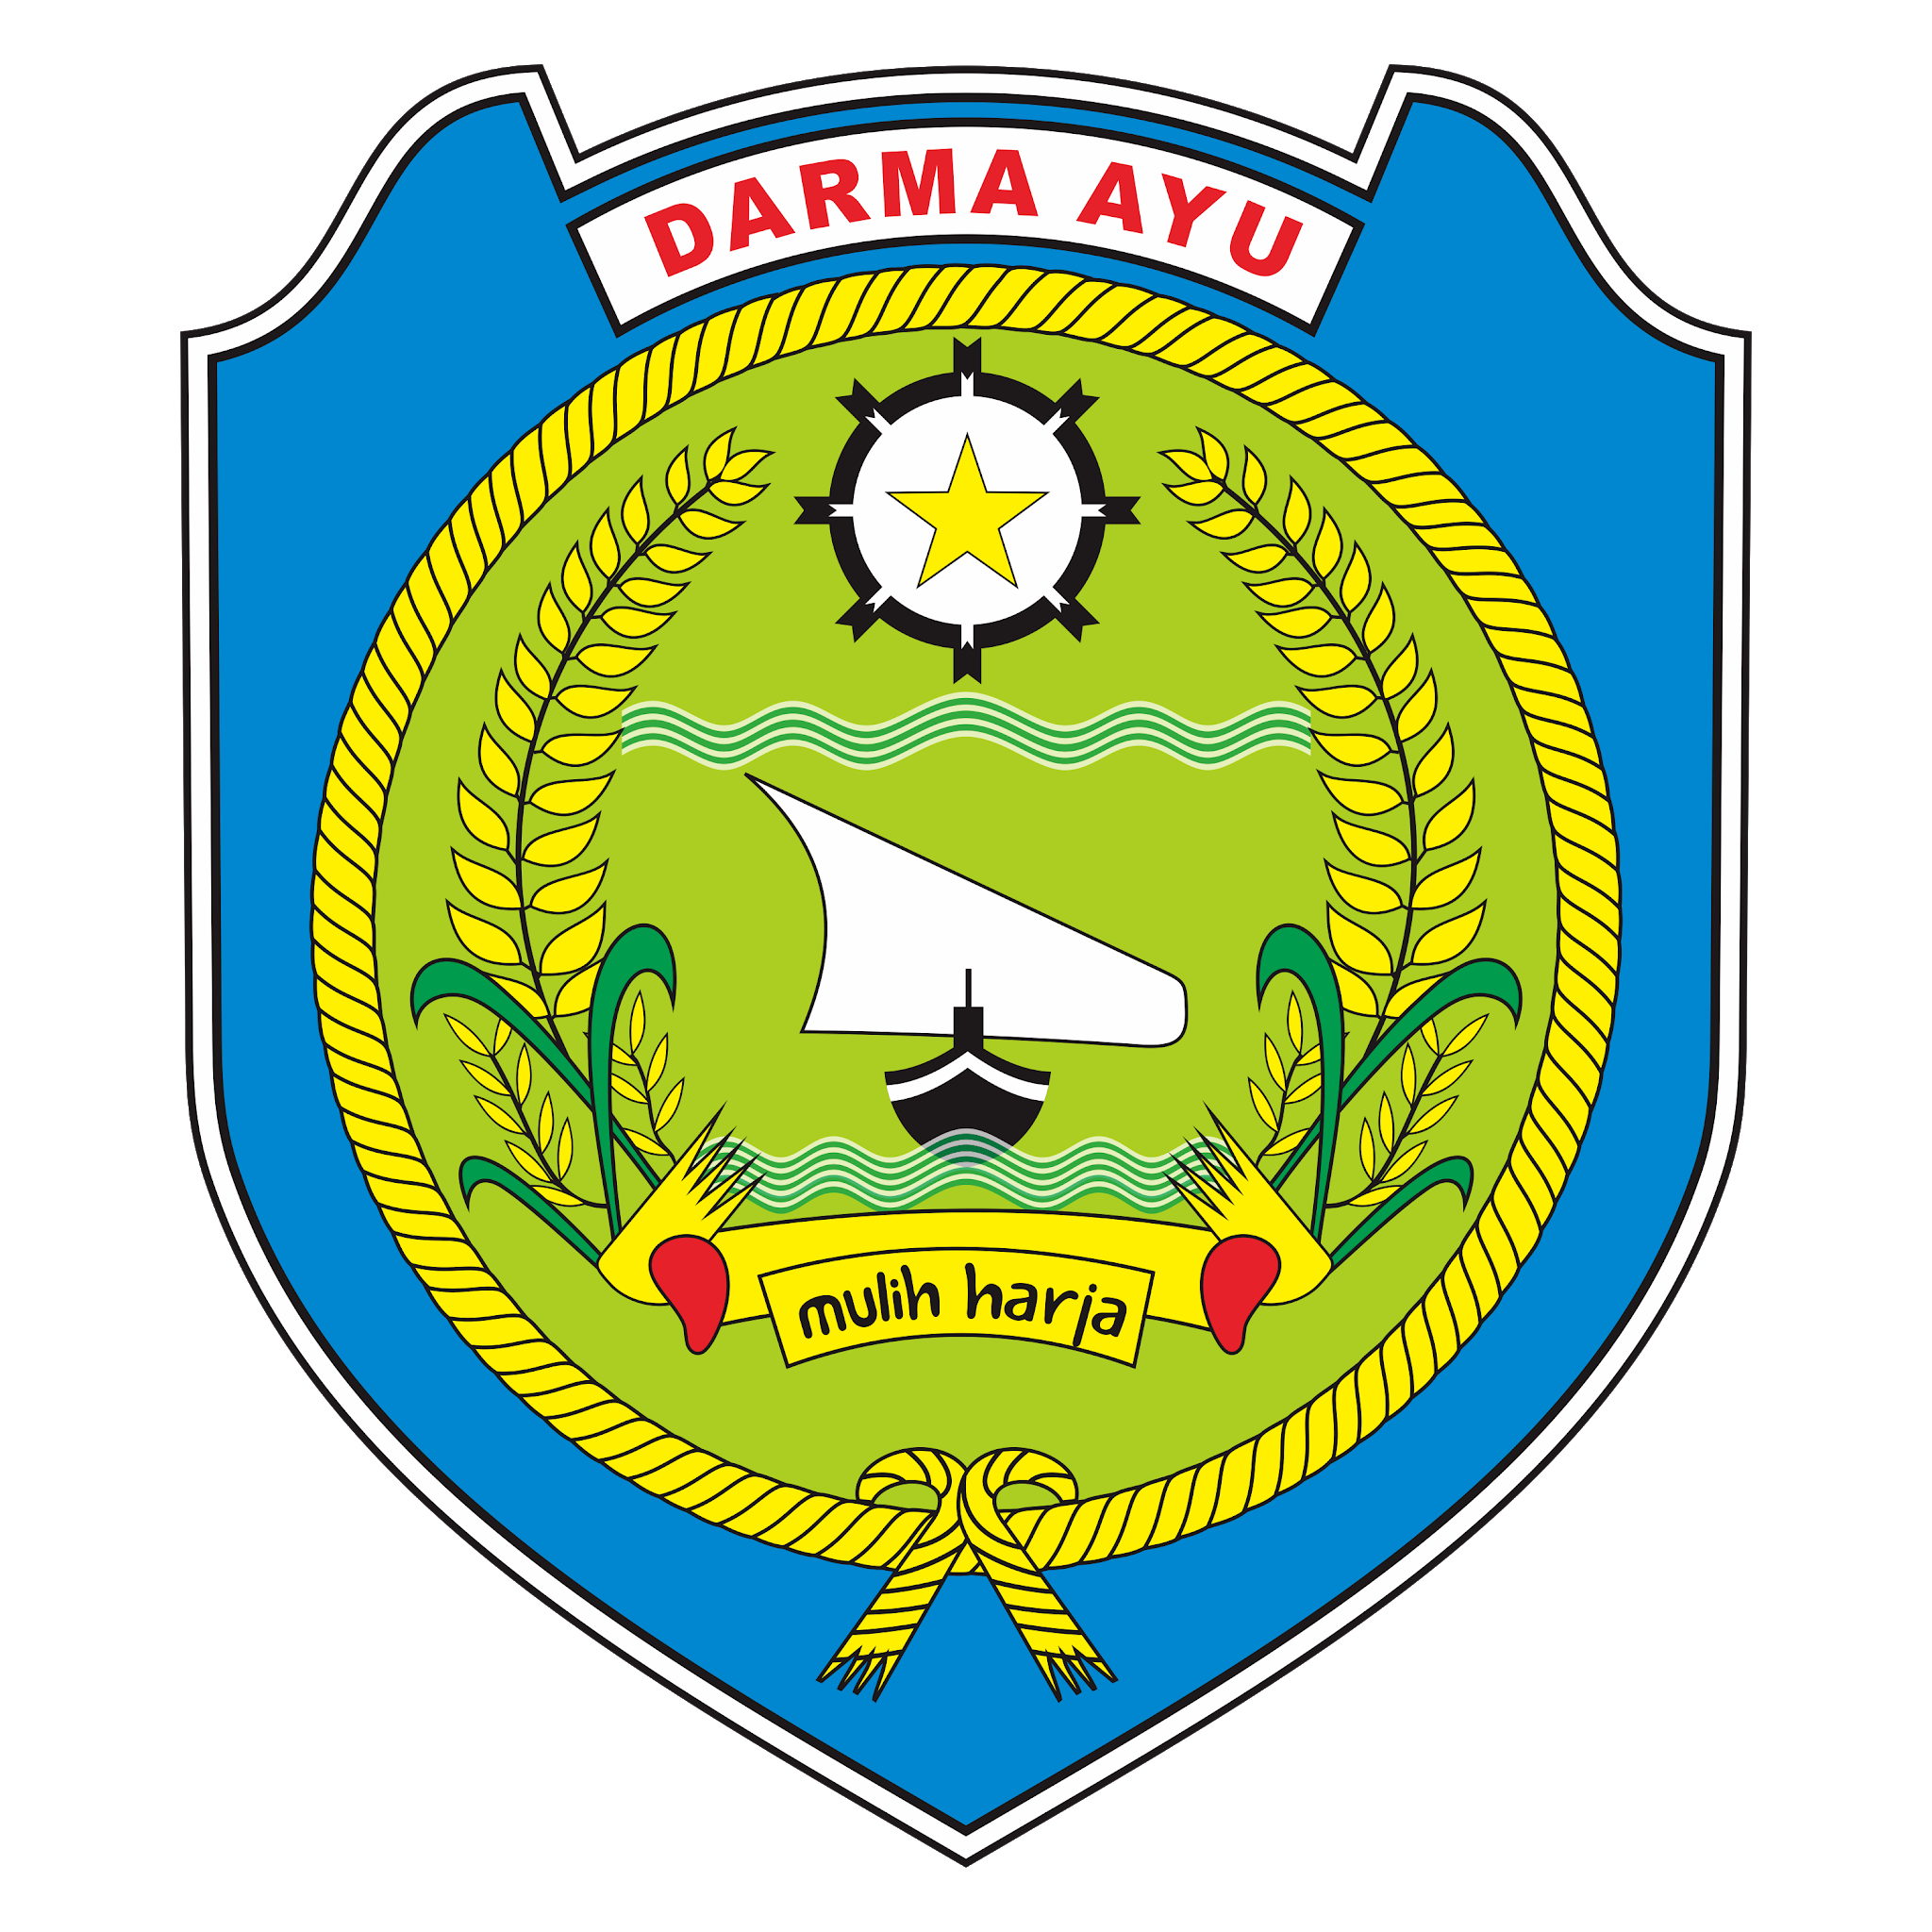 SIBANGKOMAYU Logo